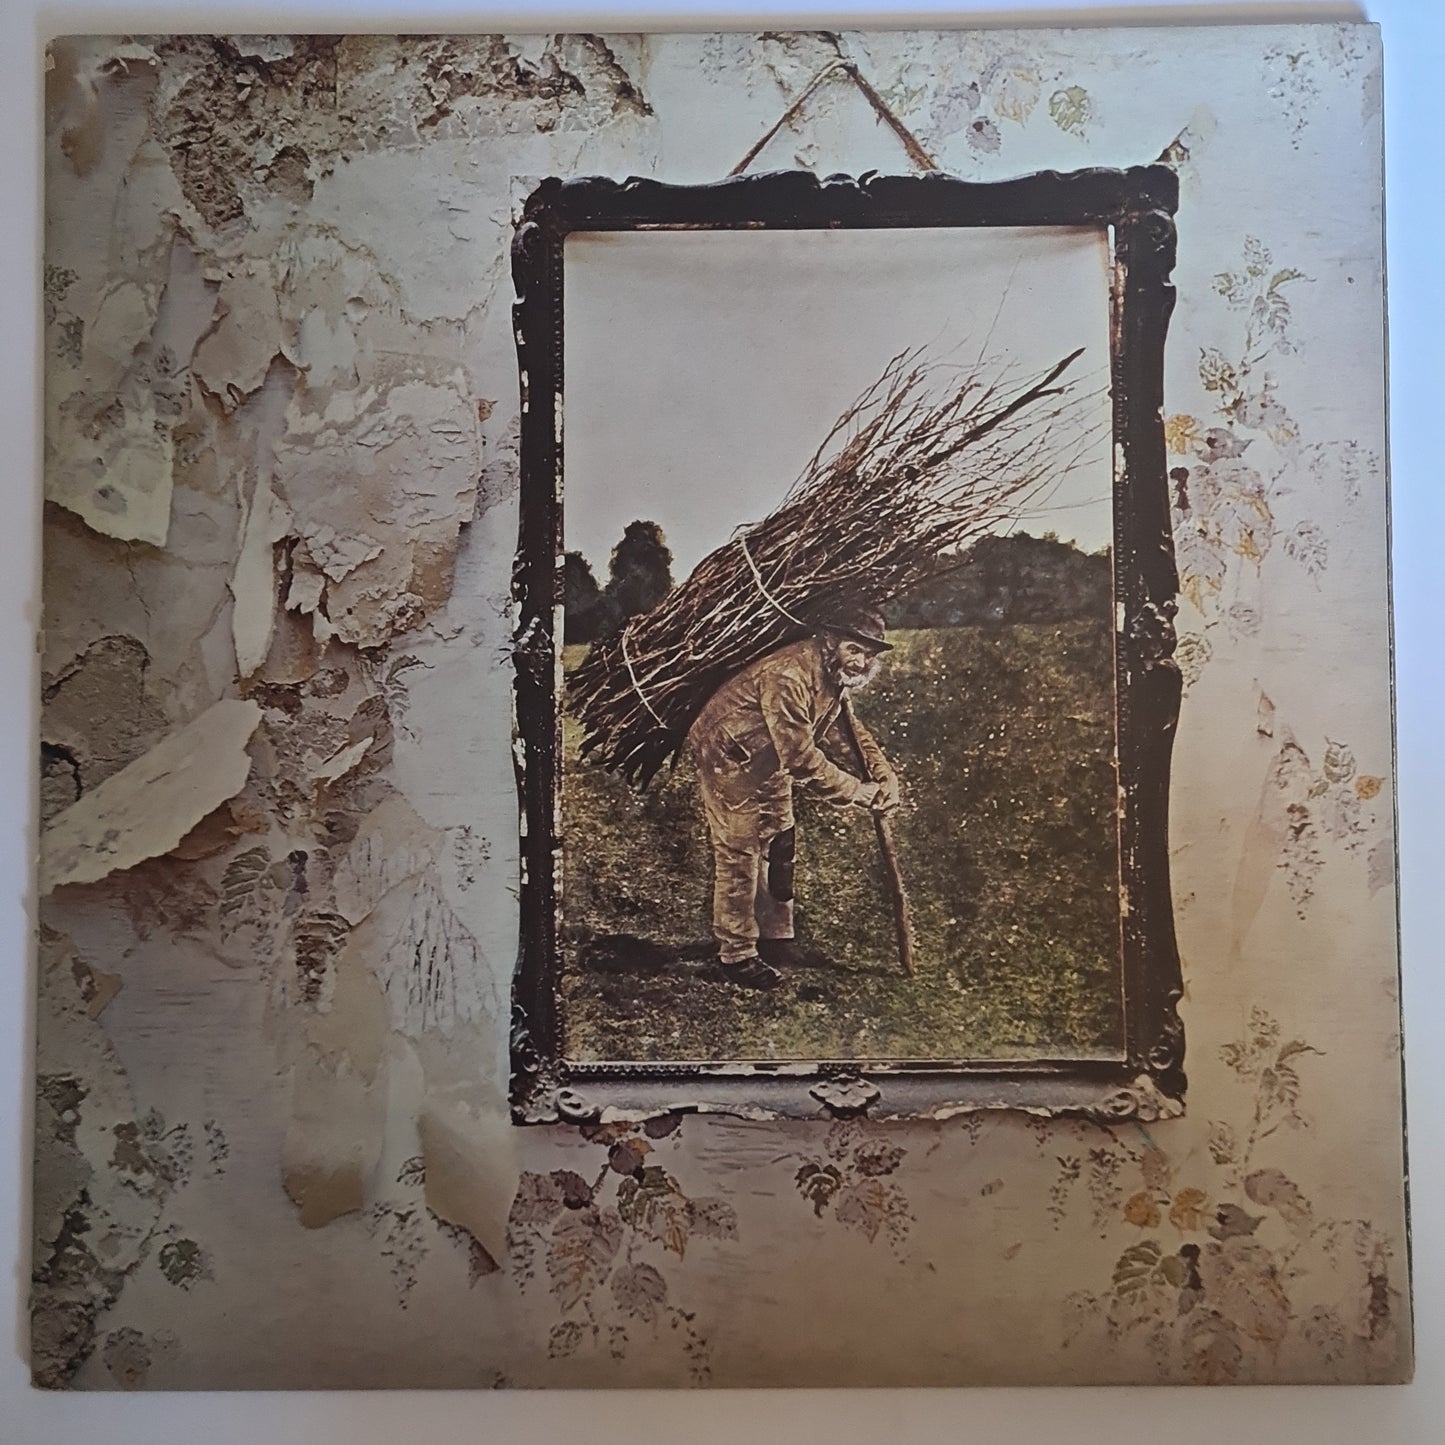 Led Zeppelin – Led Zeppelin 4 - 1971 (Gatefold) - Vinyl Record